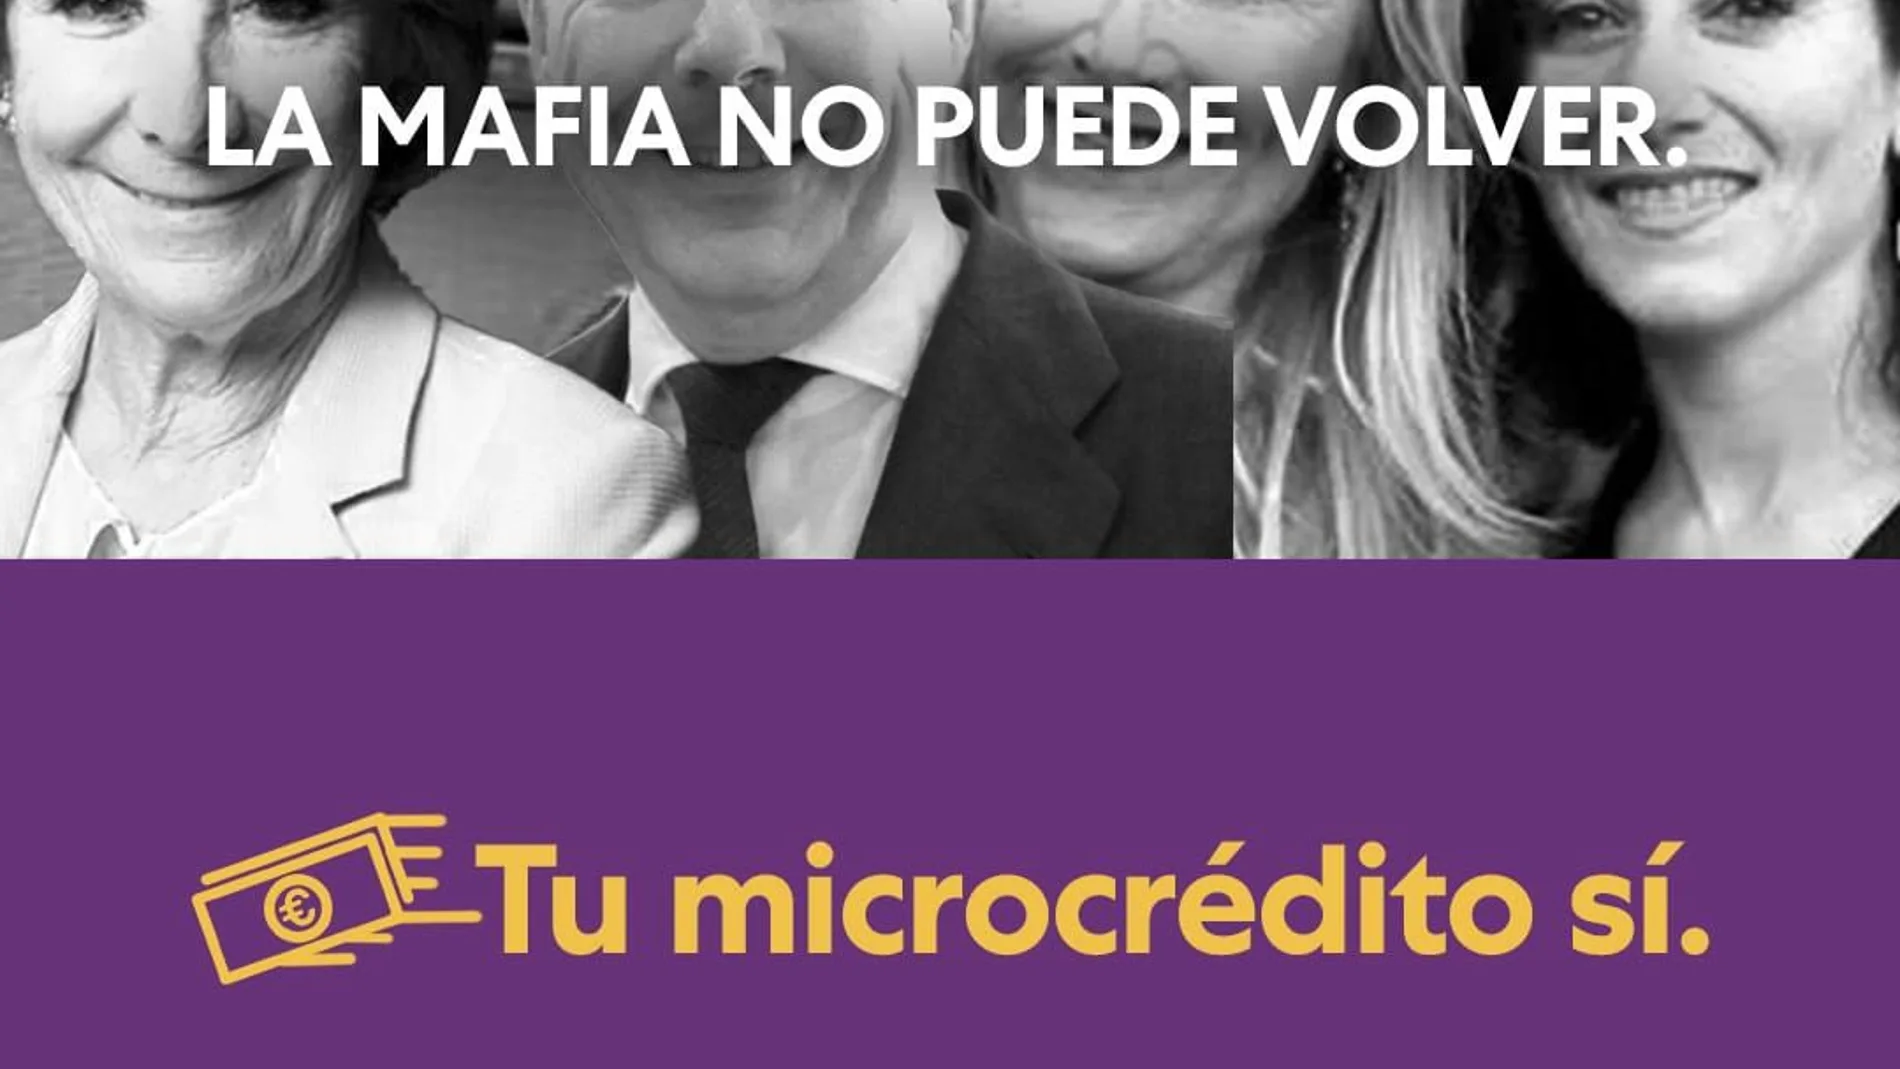 Campaña de Unidas Podemos de microcréditos para Madrid